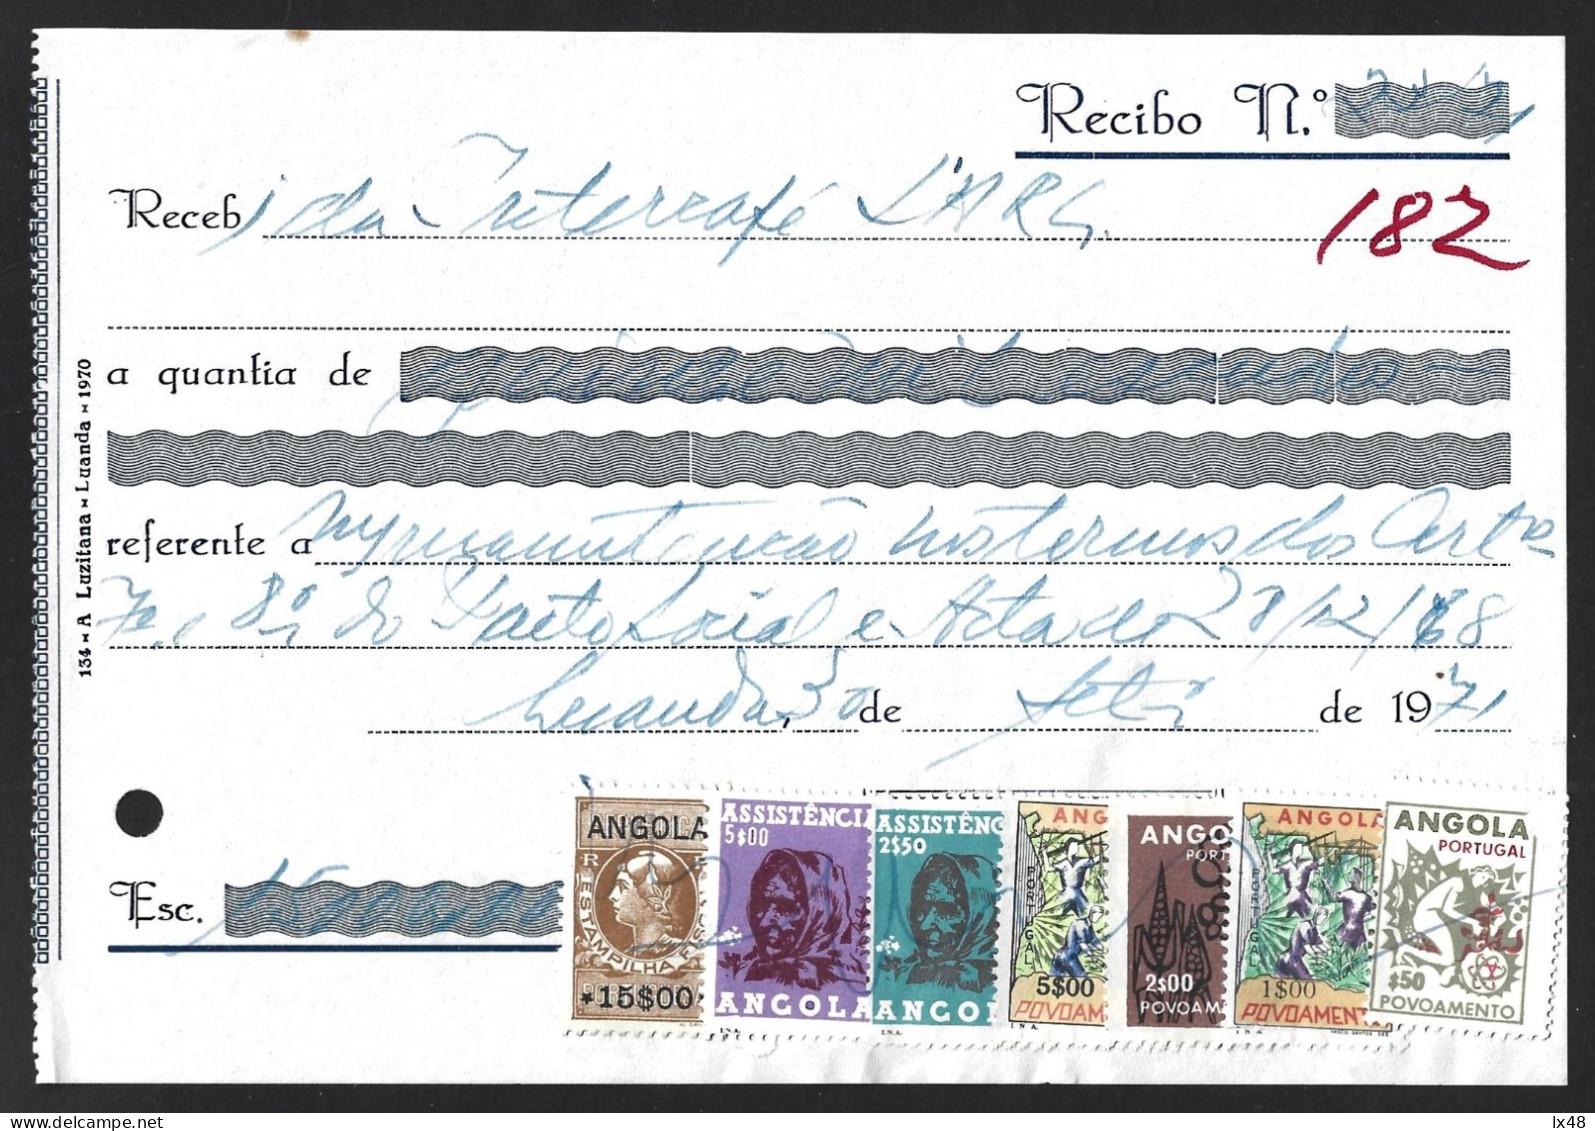 Recibo Emitido Em Luanda 1971 Com Stamp Fiscal 15$00 E 6 Stamps De Correio Usados Como Fiscais Da Assistência E Povoamen - Briefe U. Dokumente